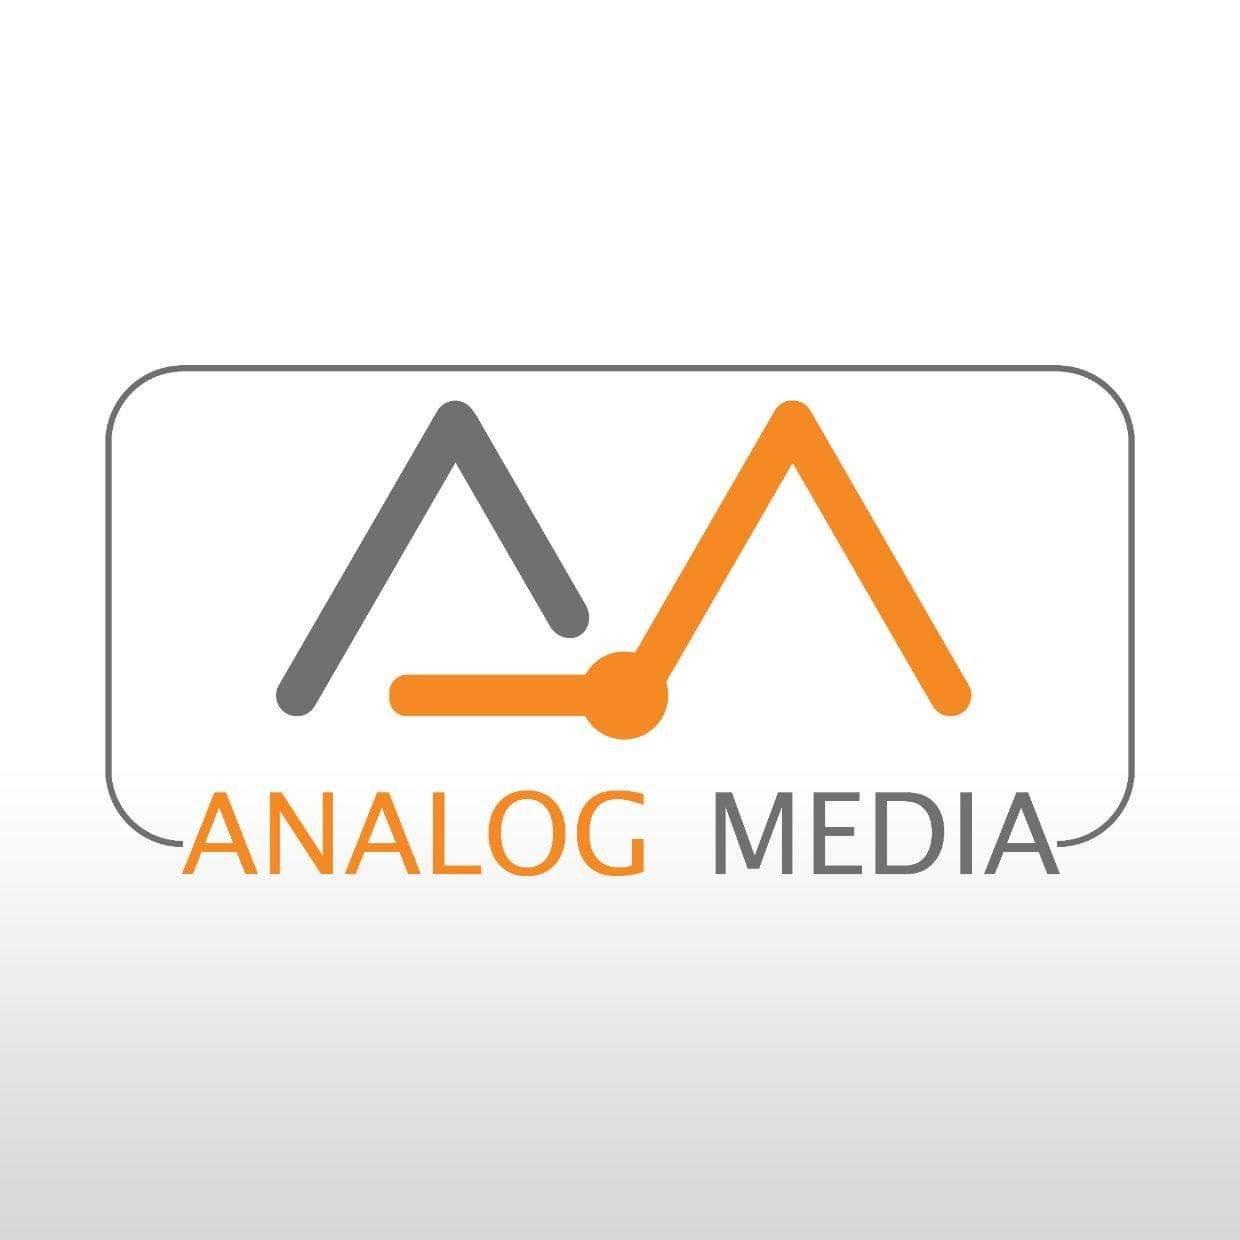 Analog Media